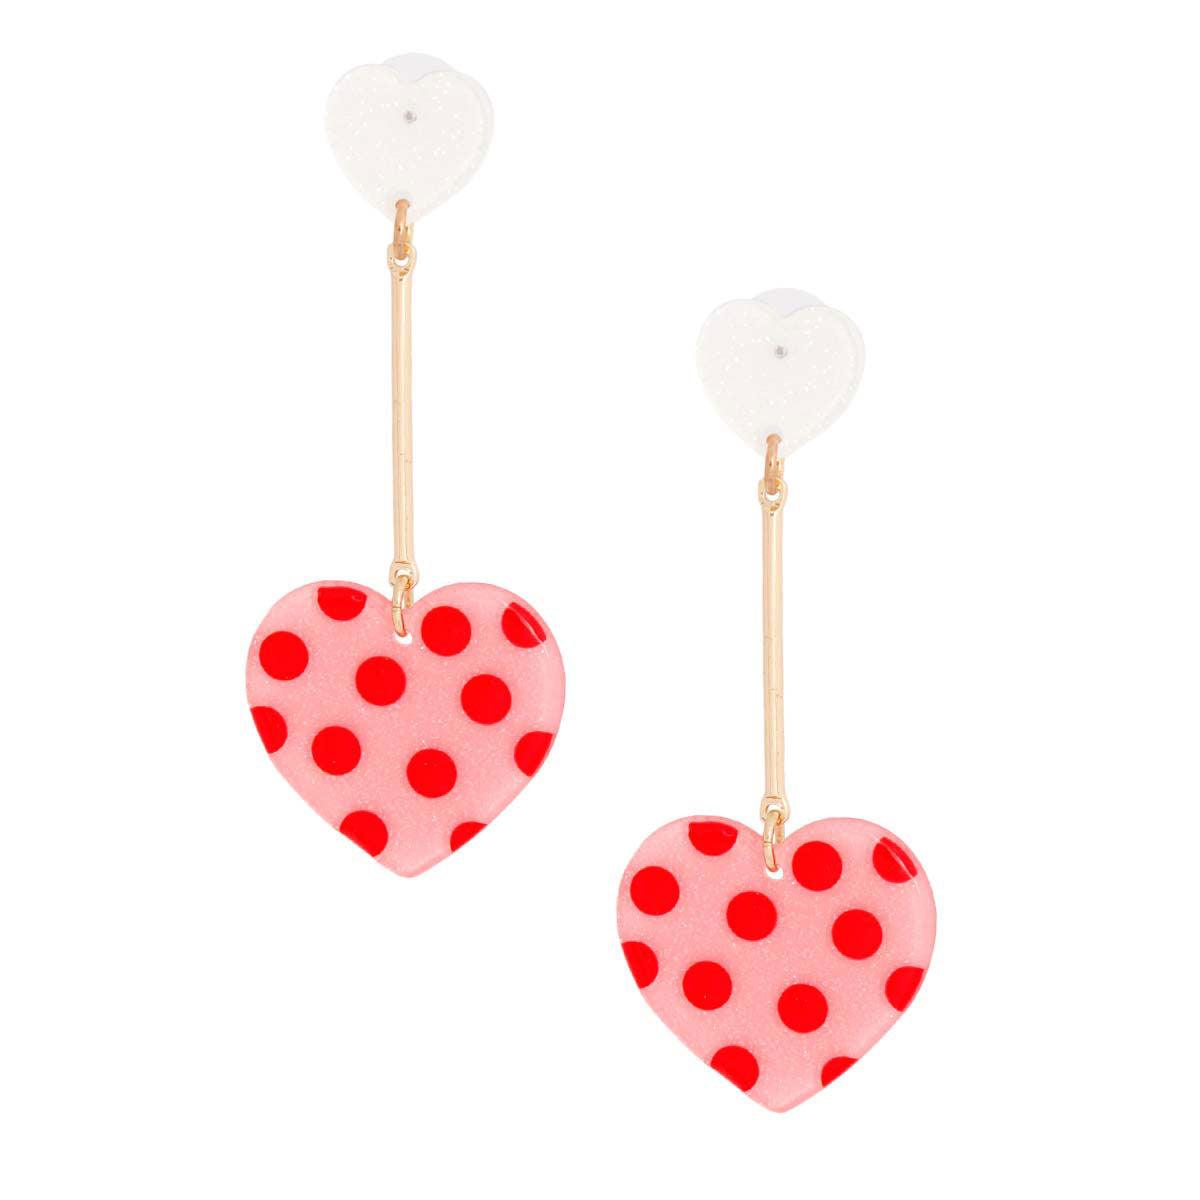 files/drop-earrings-polka-dot-pink-heart-jewelry-bubble-1.jpg